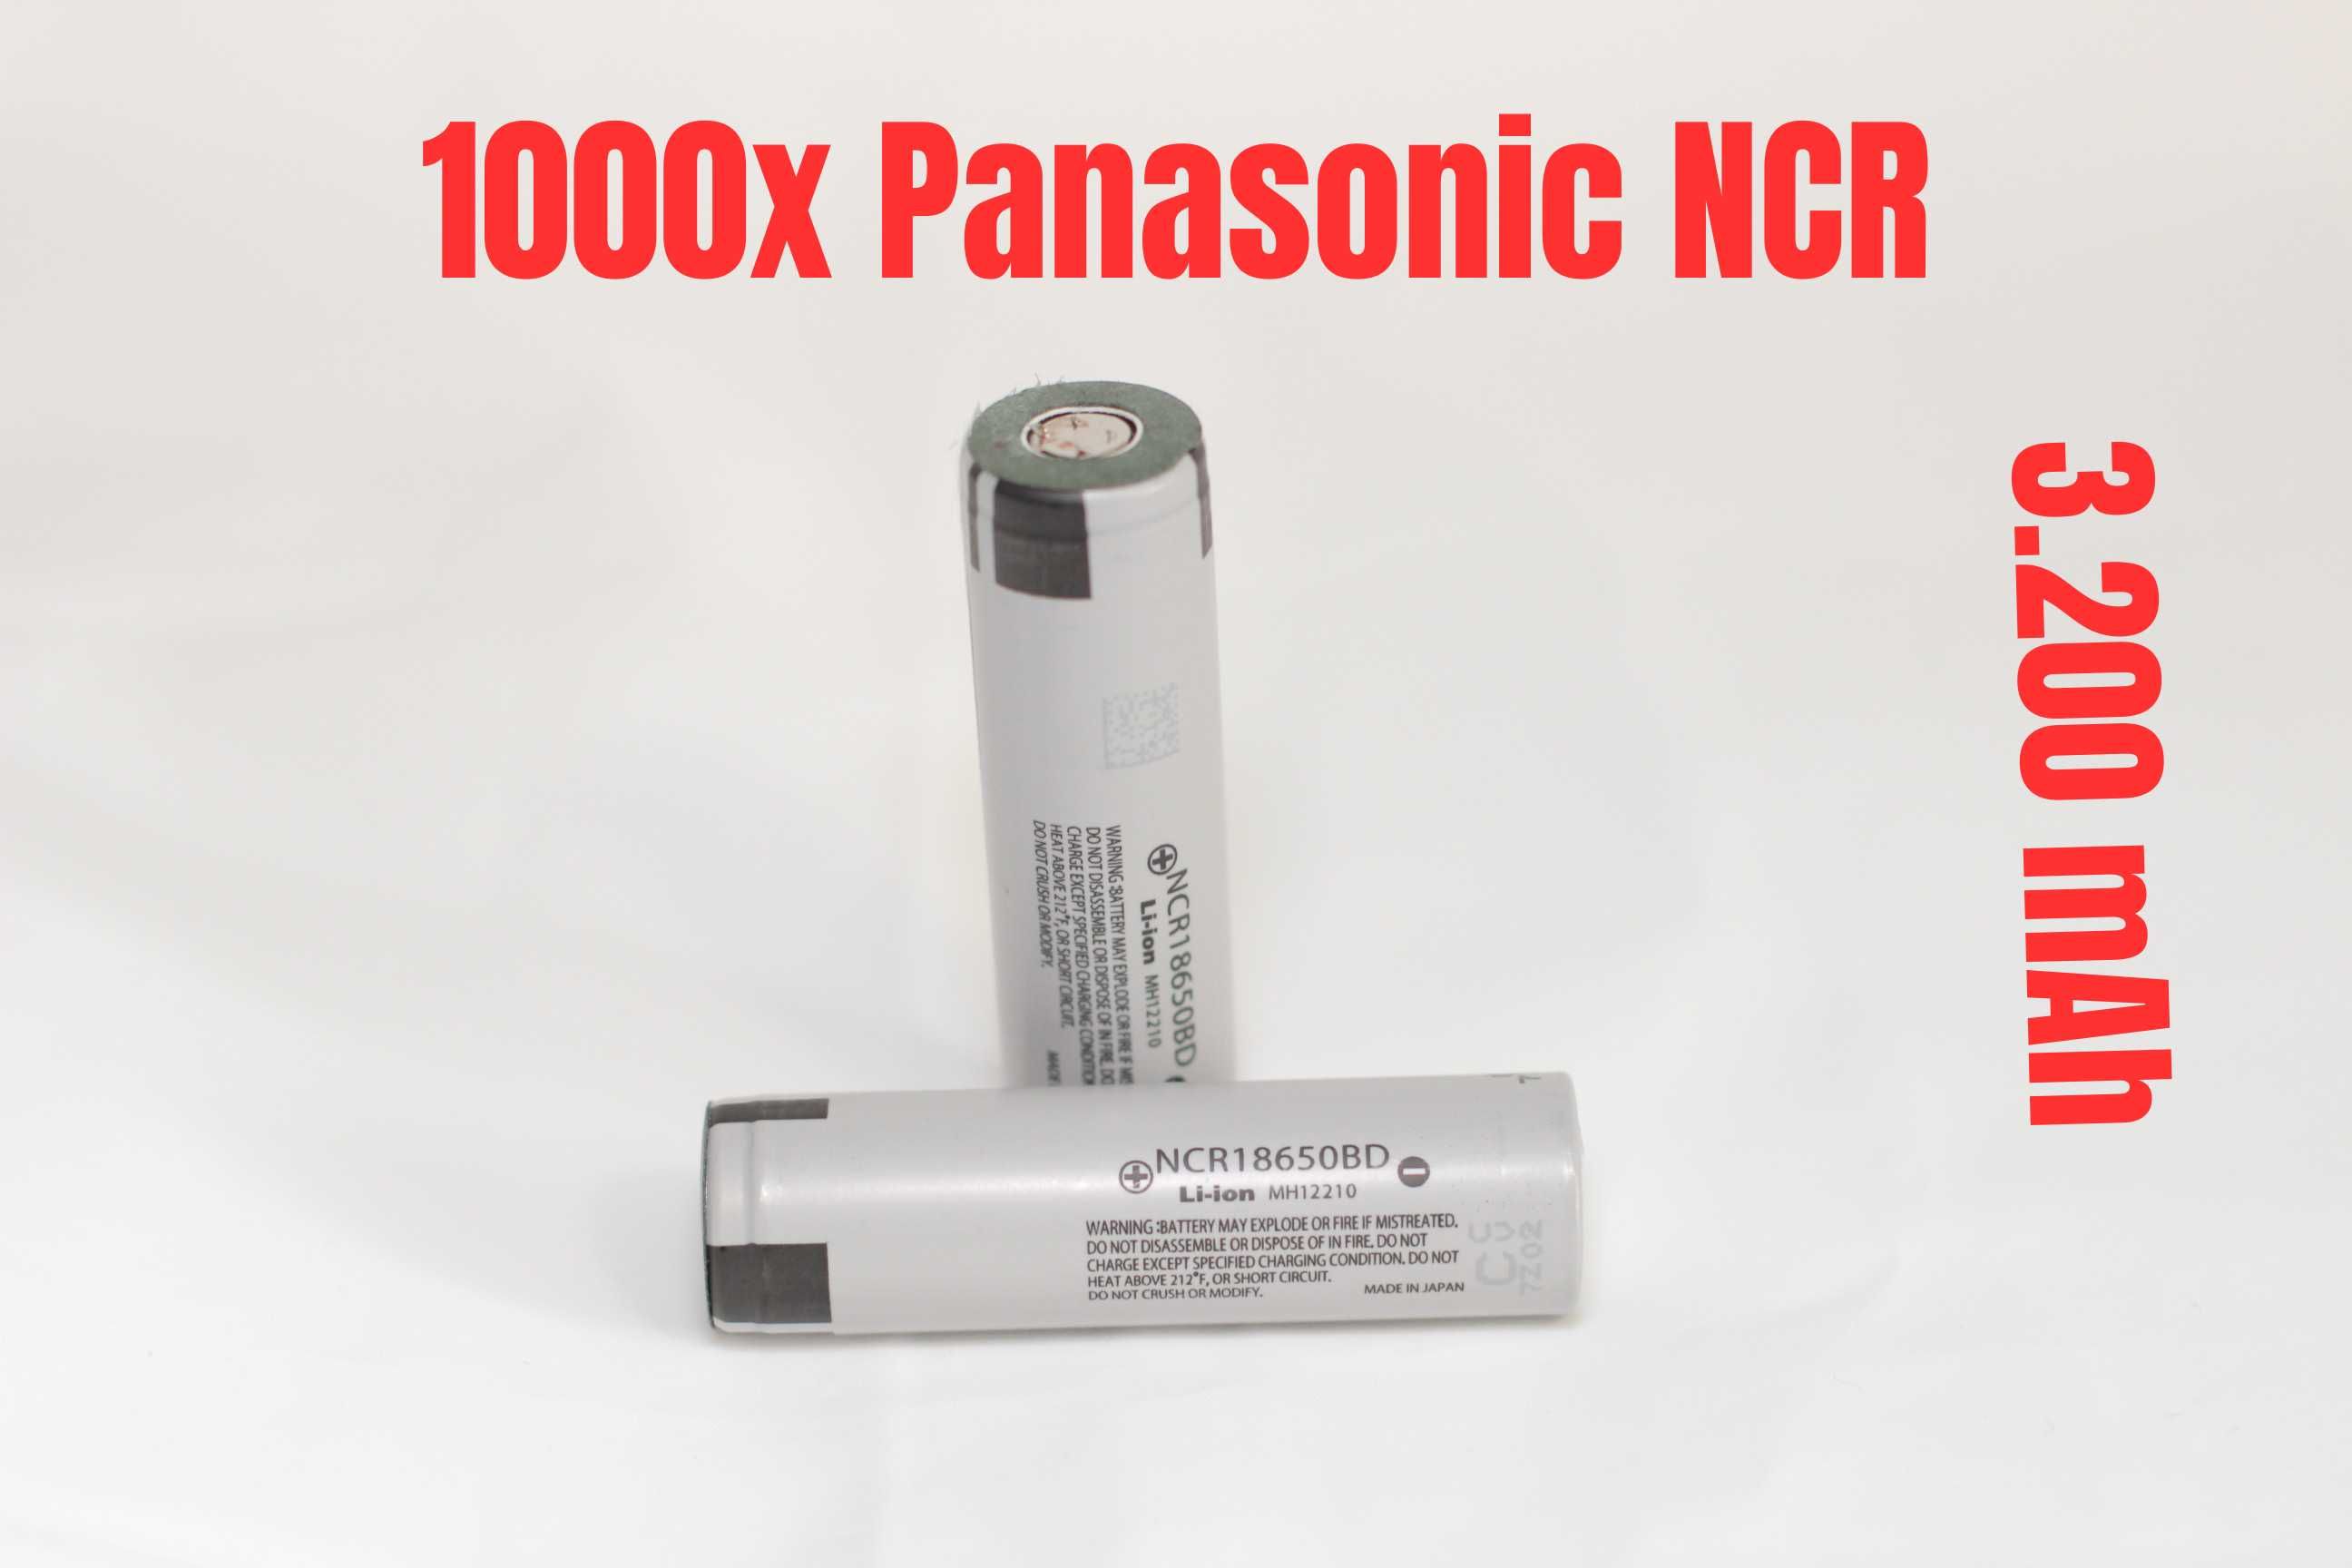 1000 x Panasonic NCR 3200 mAh, 10A, factura si garantie